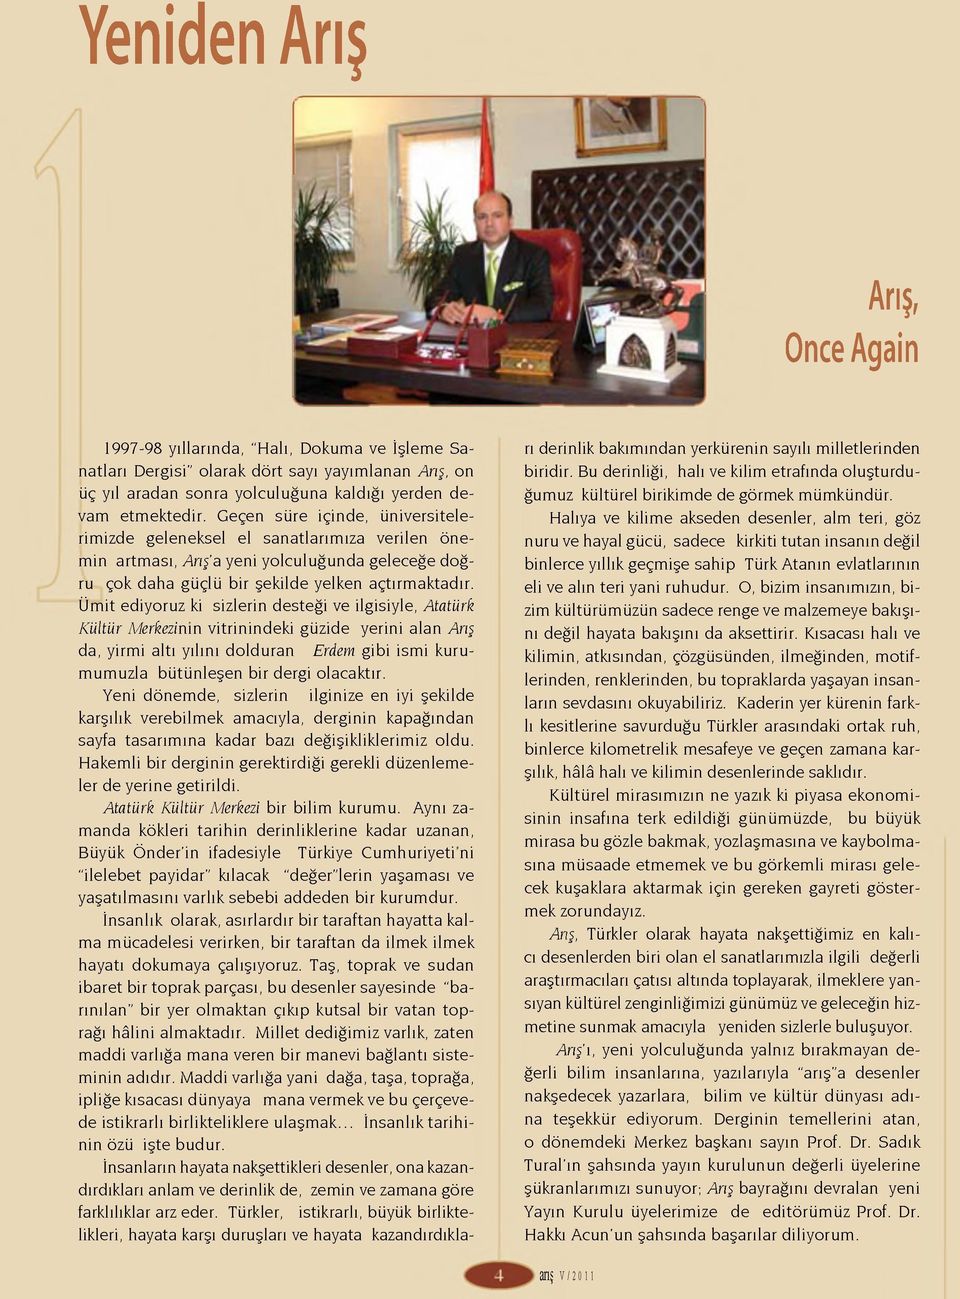 Ümit ediyoruz ki sizlerin desteği ve ilgisiyle, Atatürk Kültür Merkezinin vitrinindeki güzide yerini alan Arış da, yirmi altı yılını dolduran Erdem gibi ismi kurumumuzla bütünleşen bir dergi